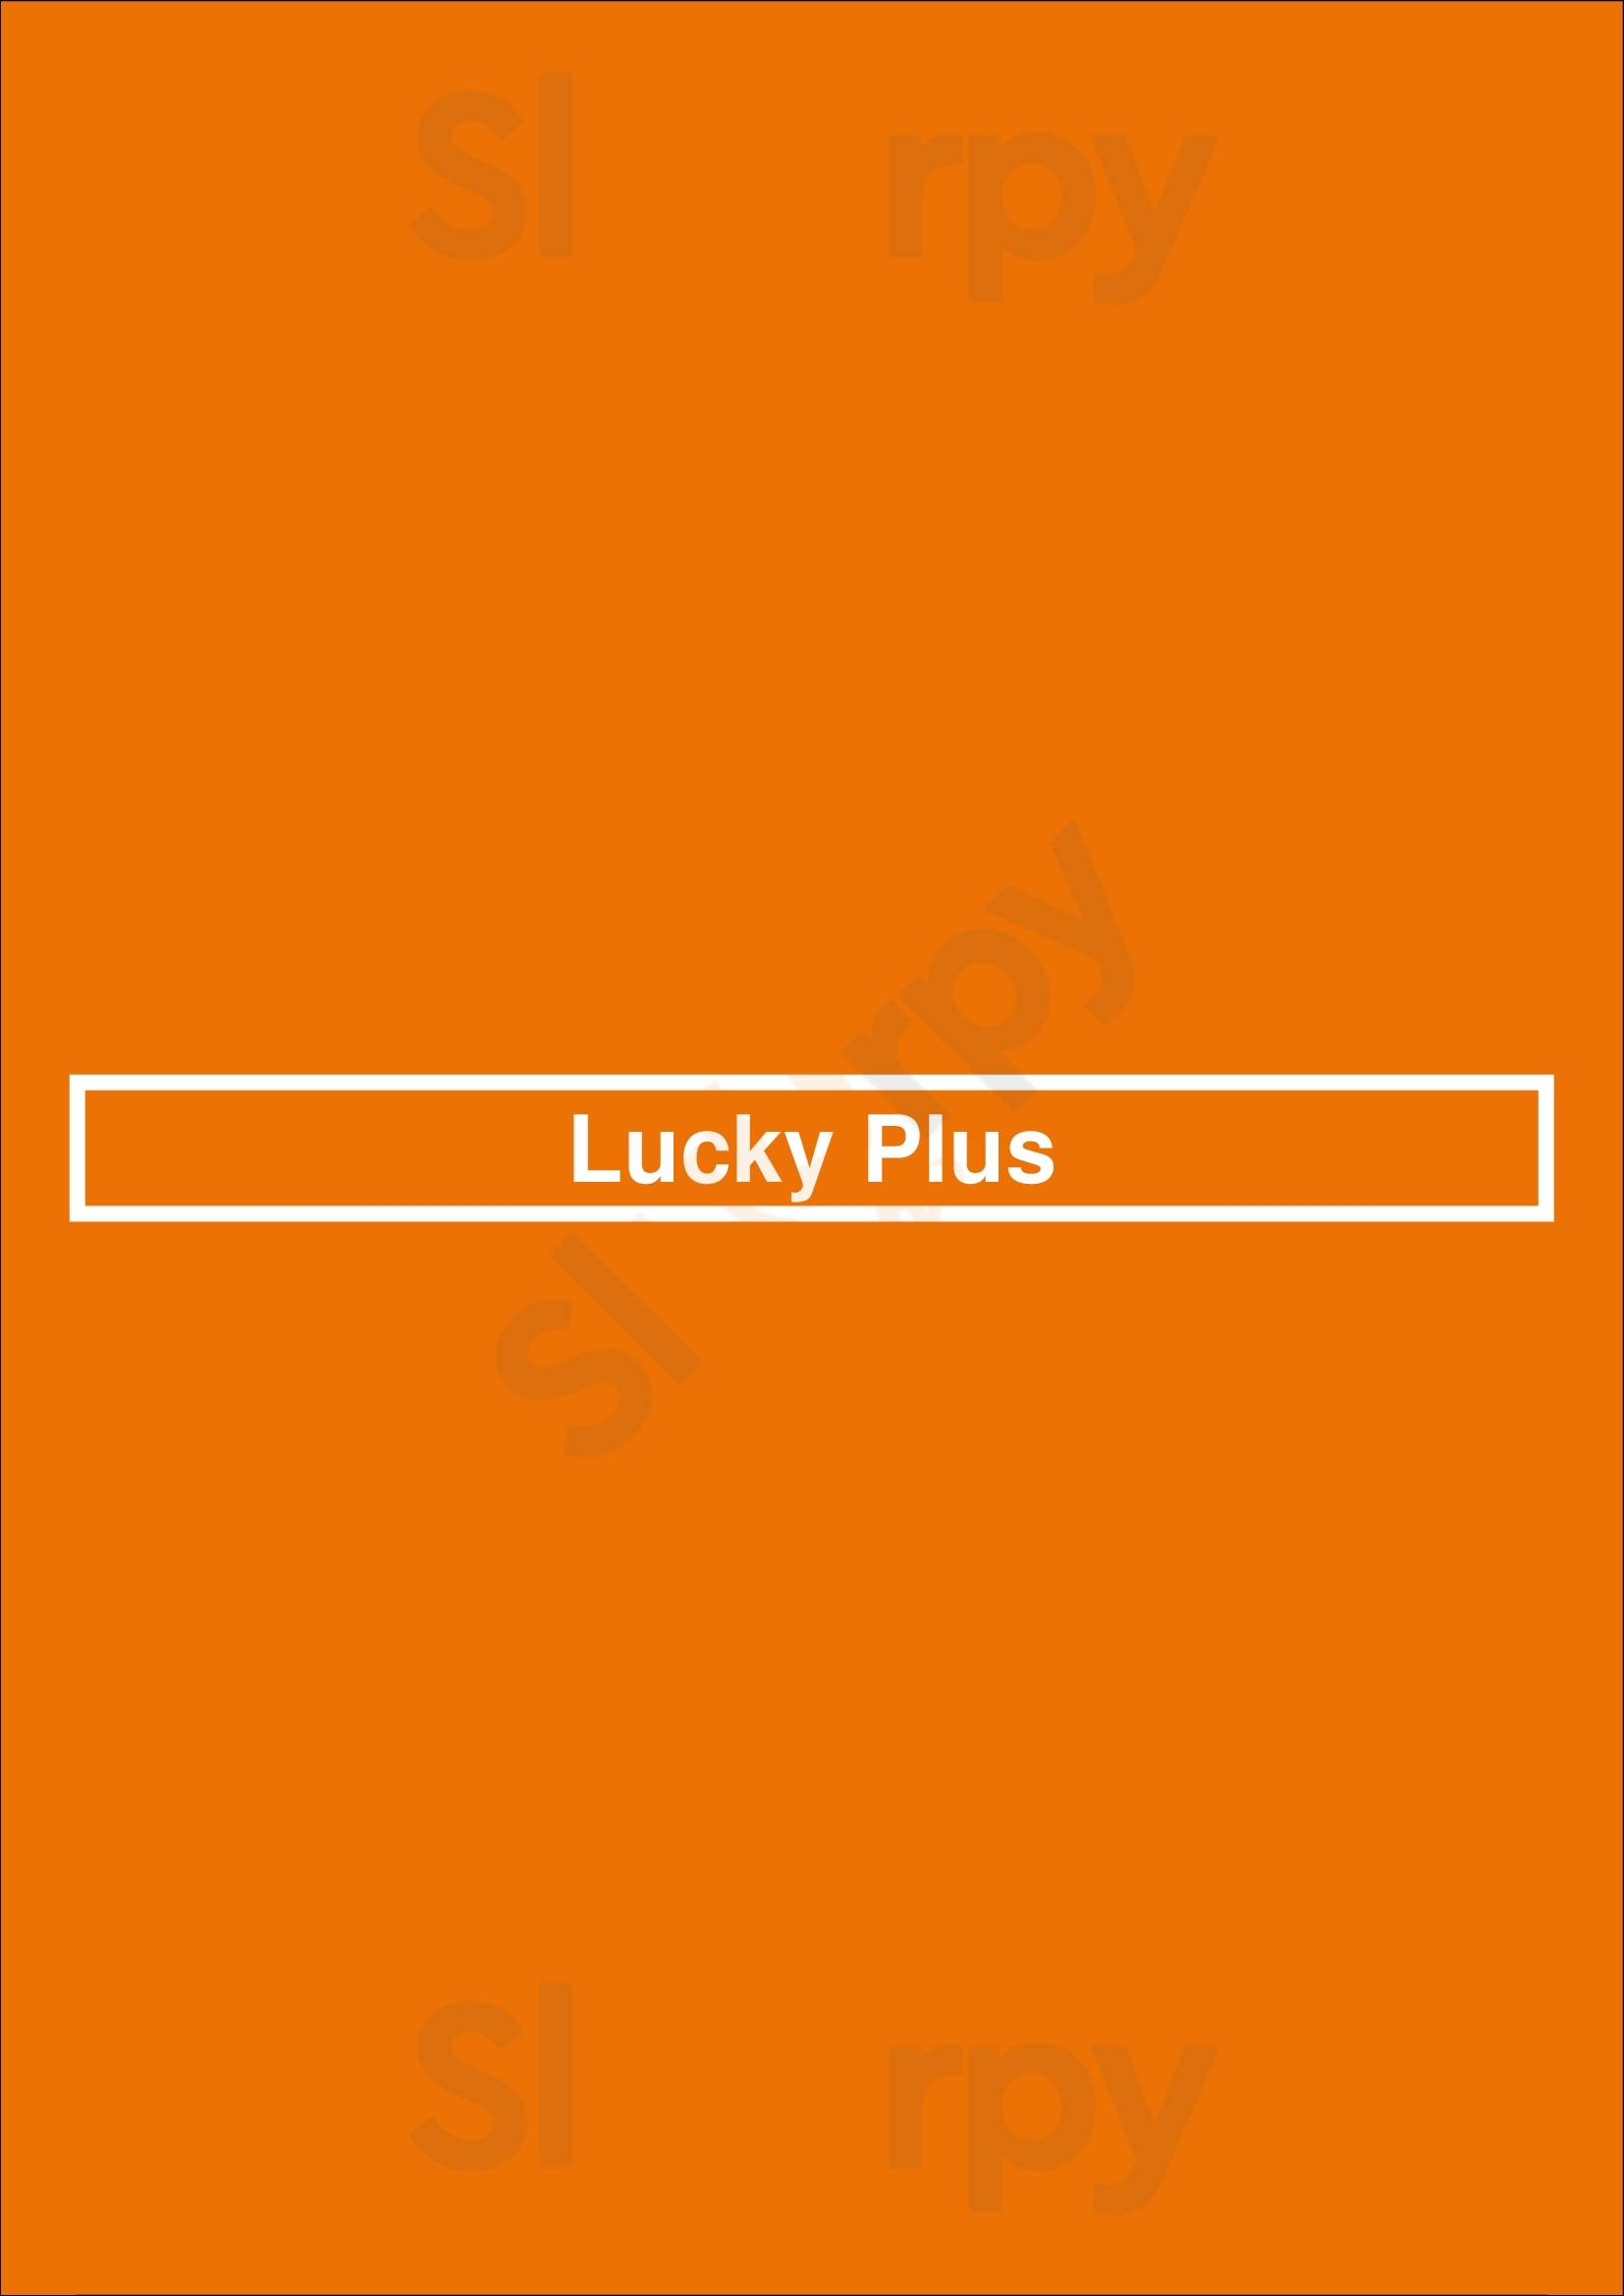 Lucky Plus Vancouver Menu - 1